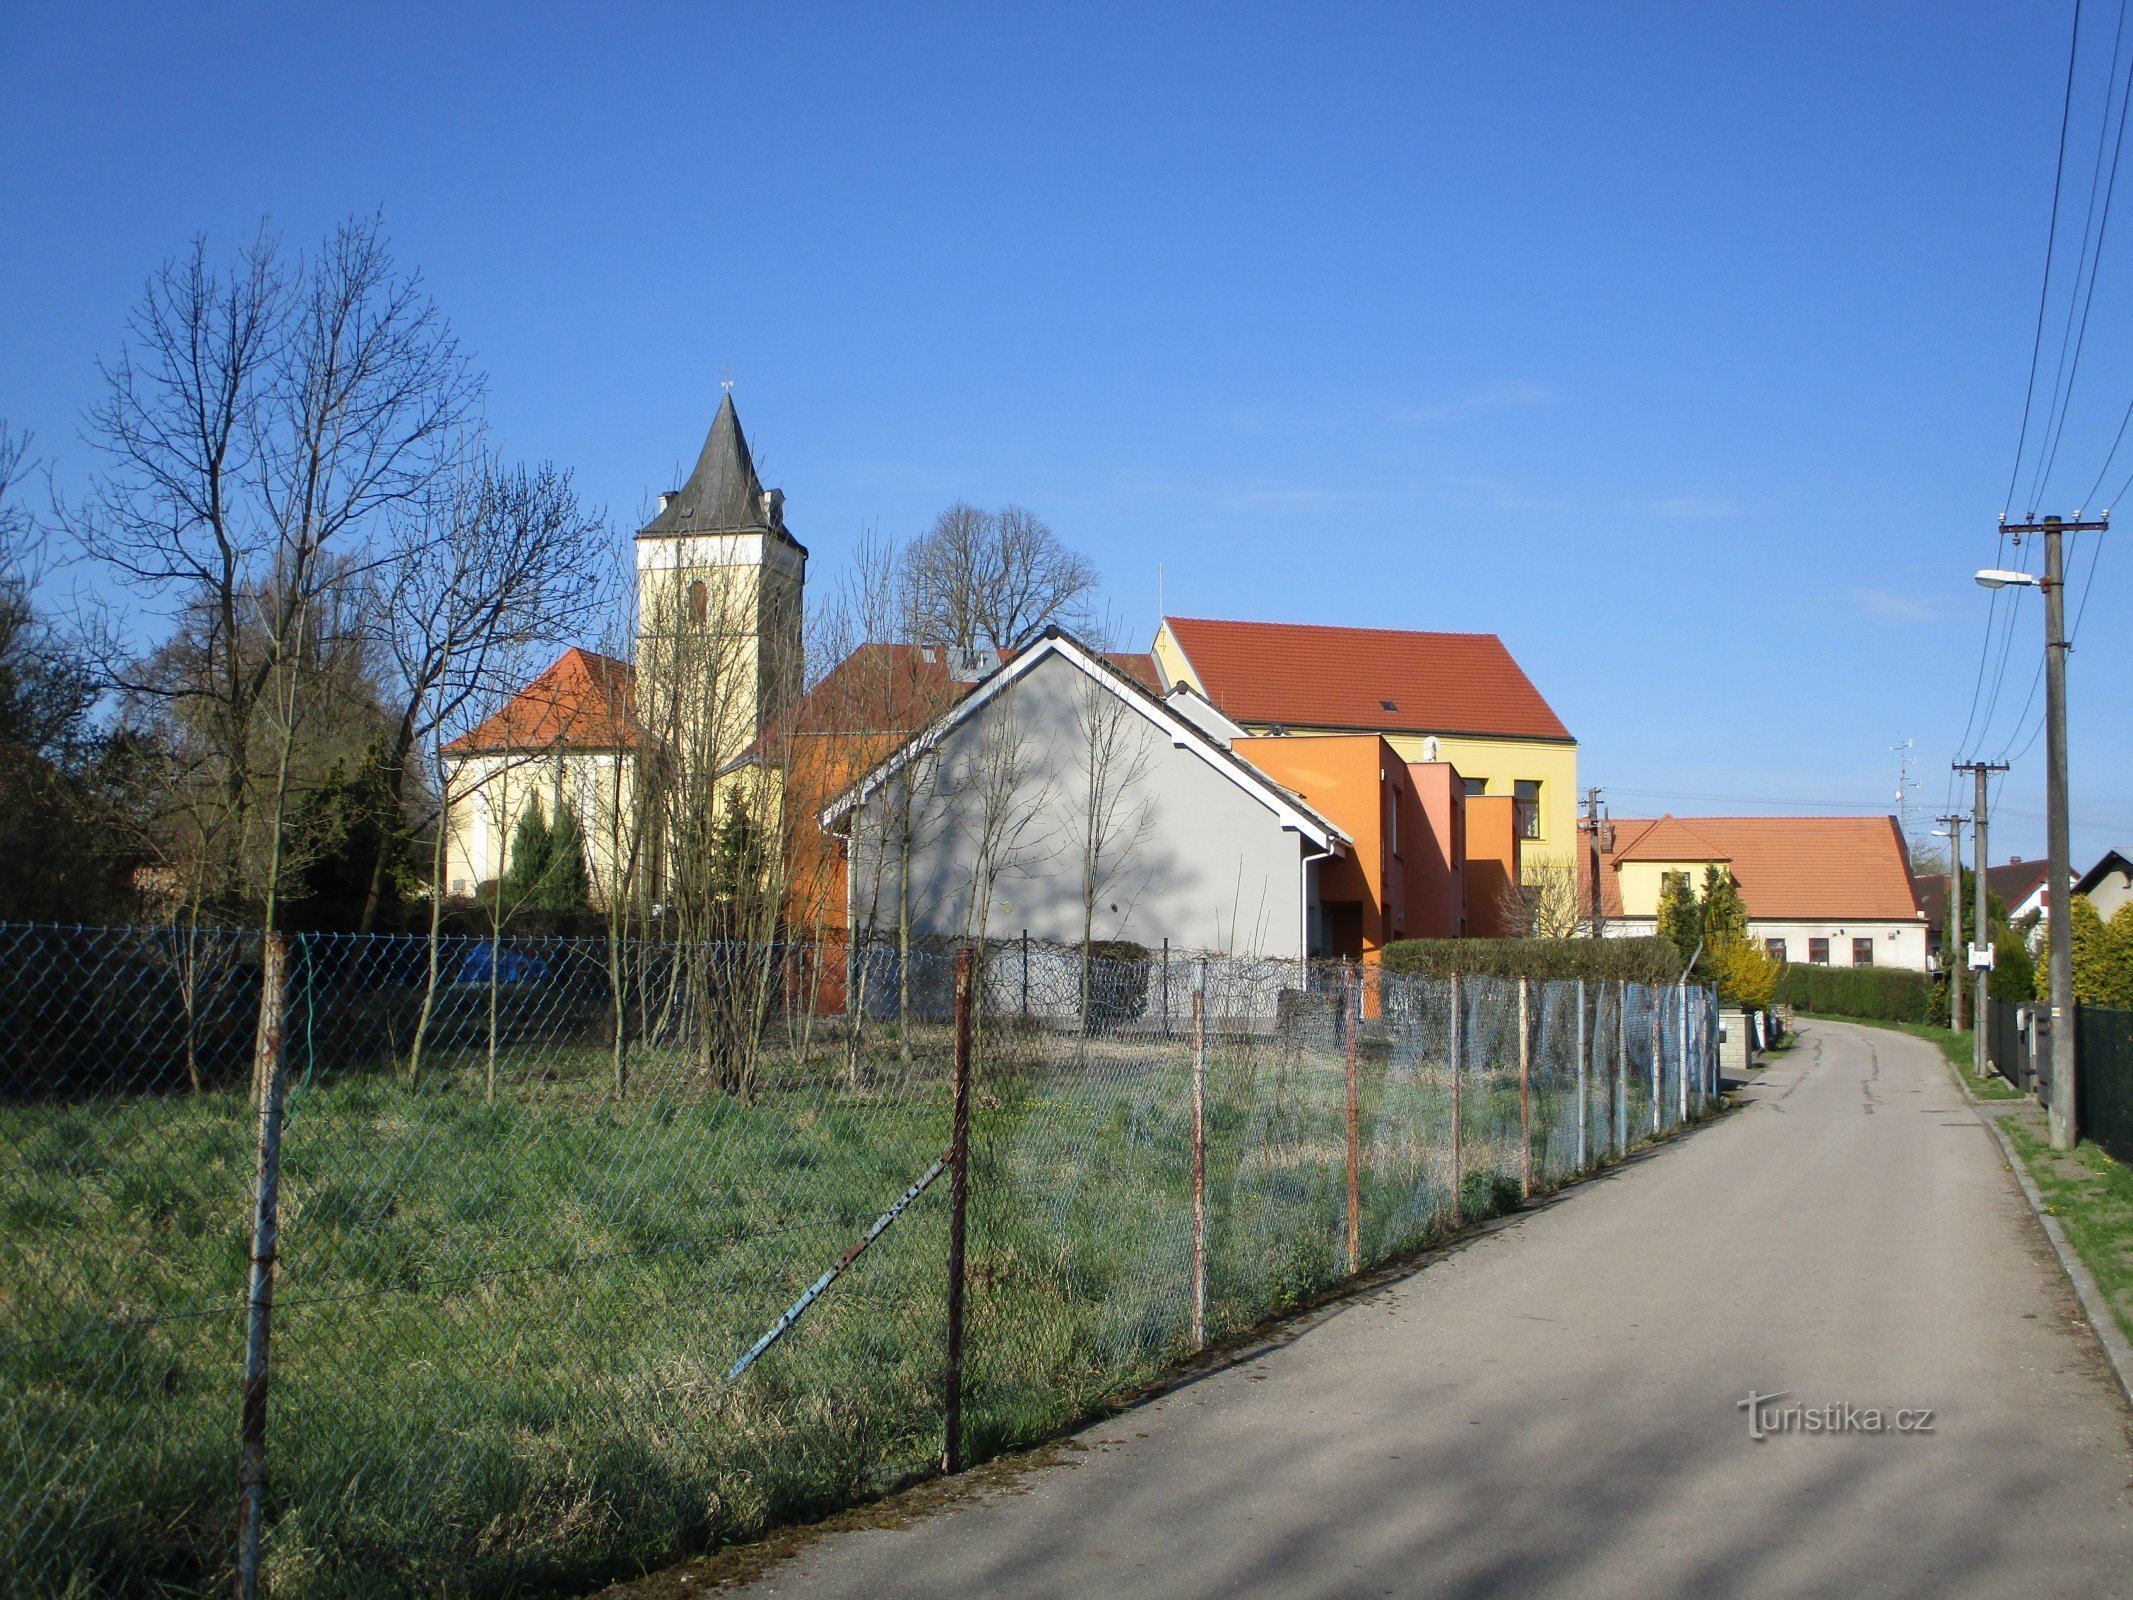 教堂和学校的景色（Lochenice）